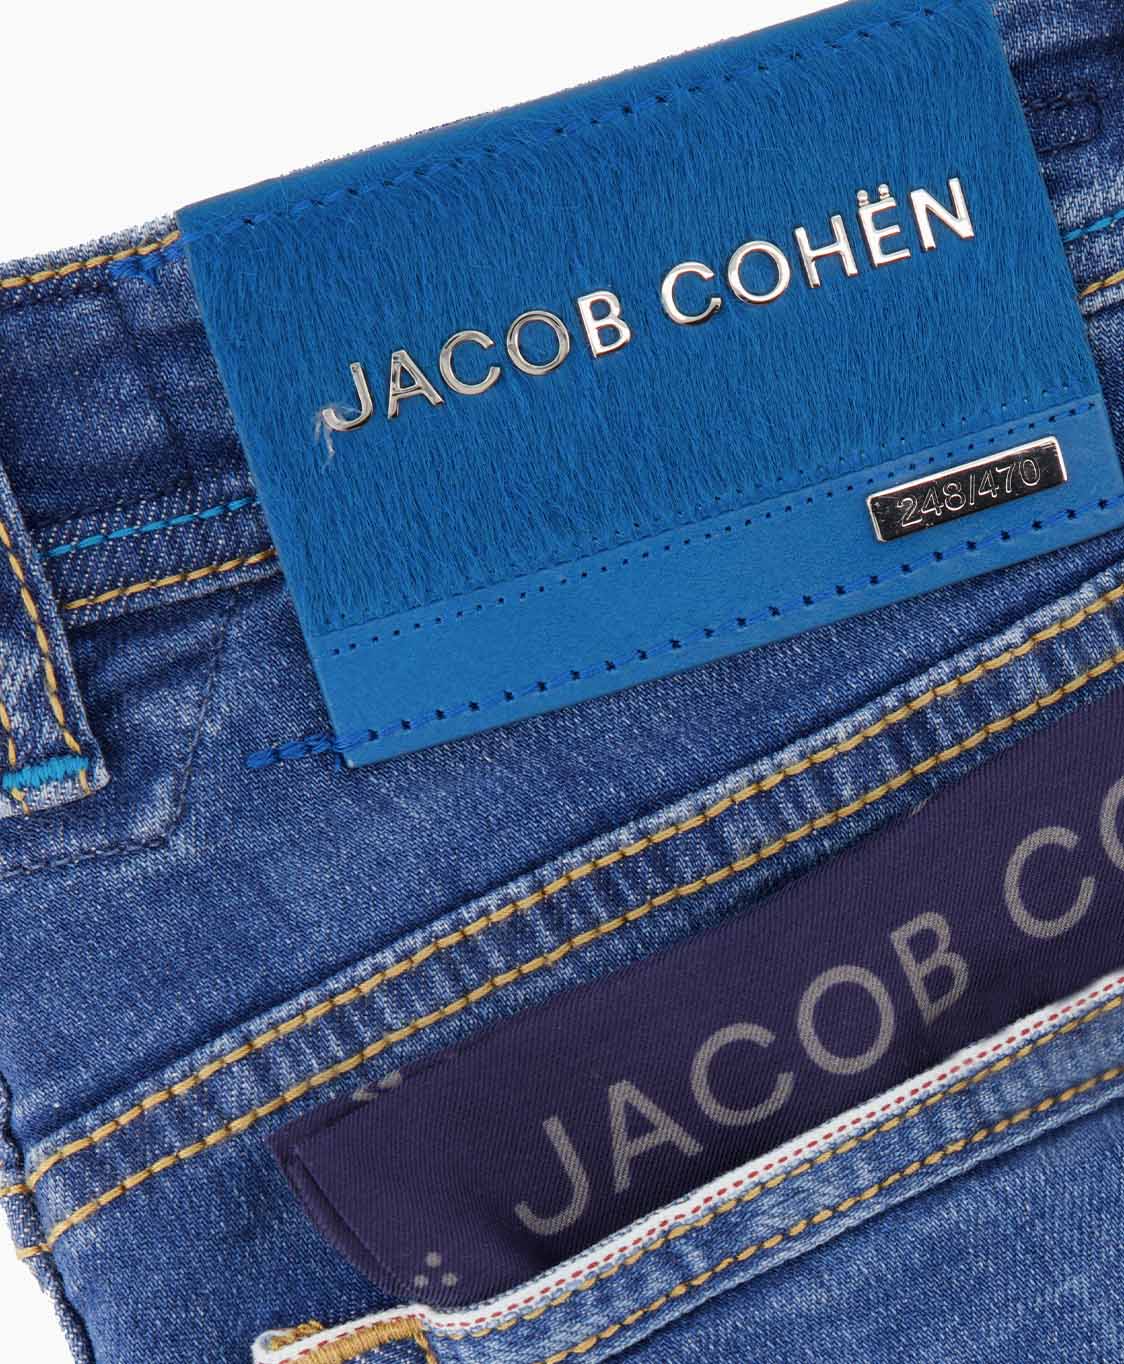 Zoeken versterking oud Jacob Cohen Jeans Jeans Diversen